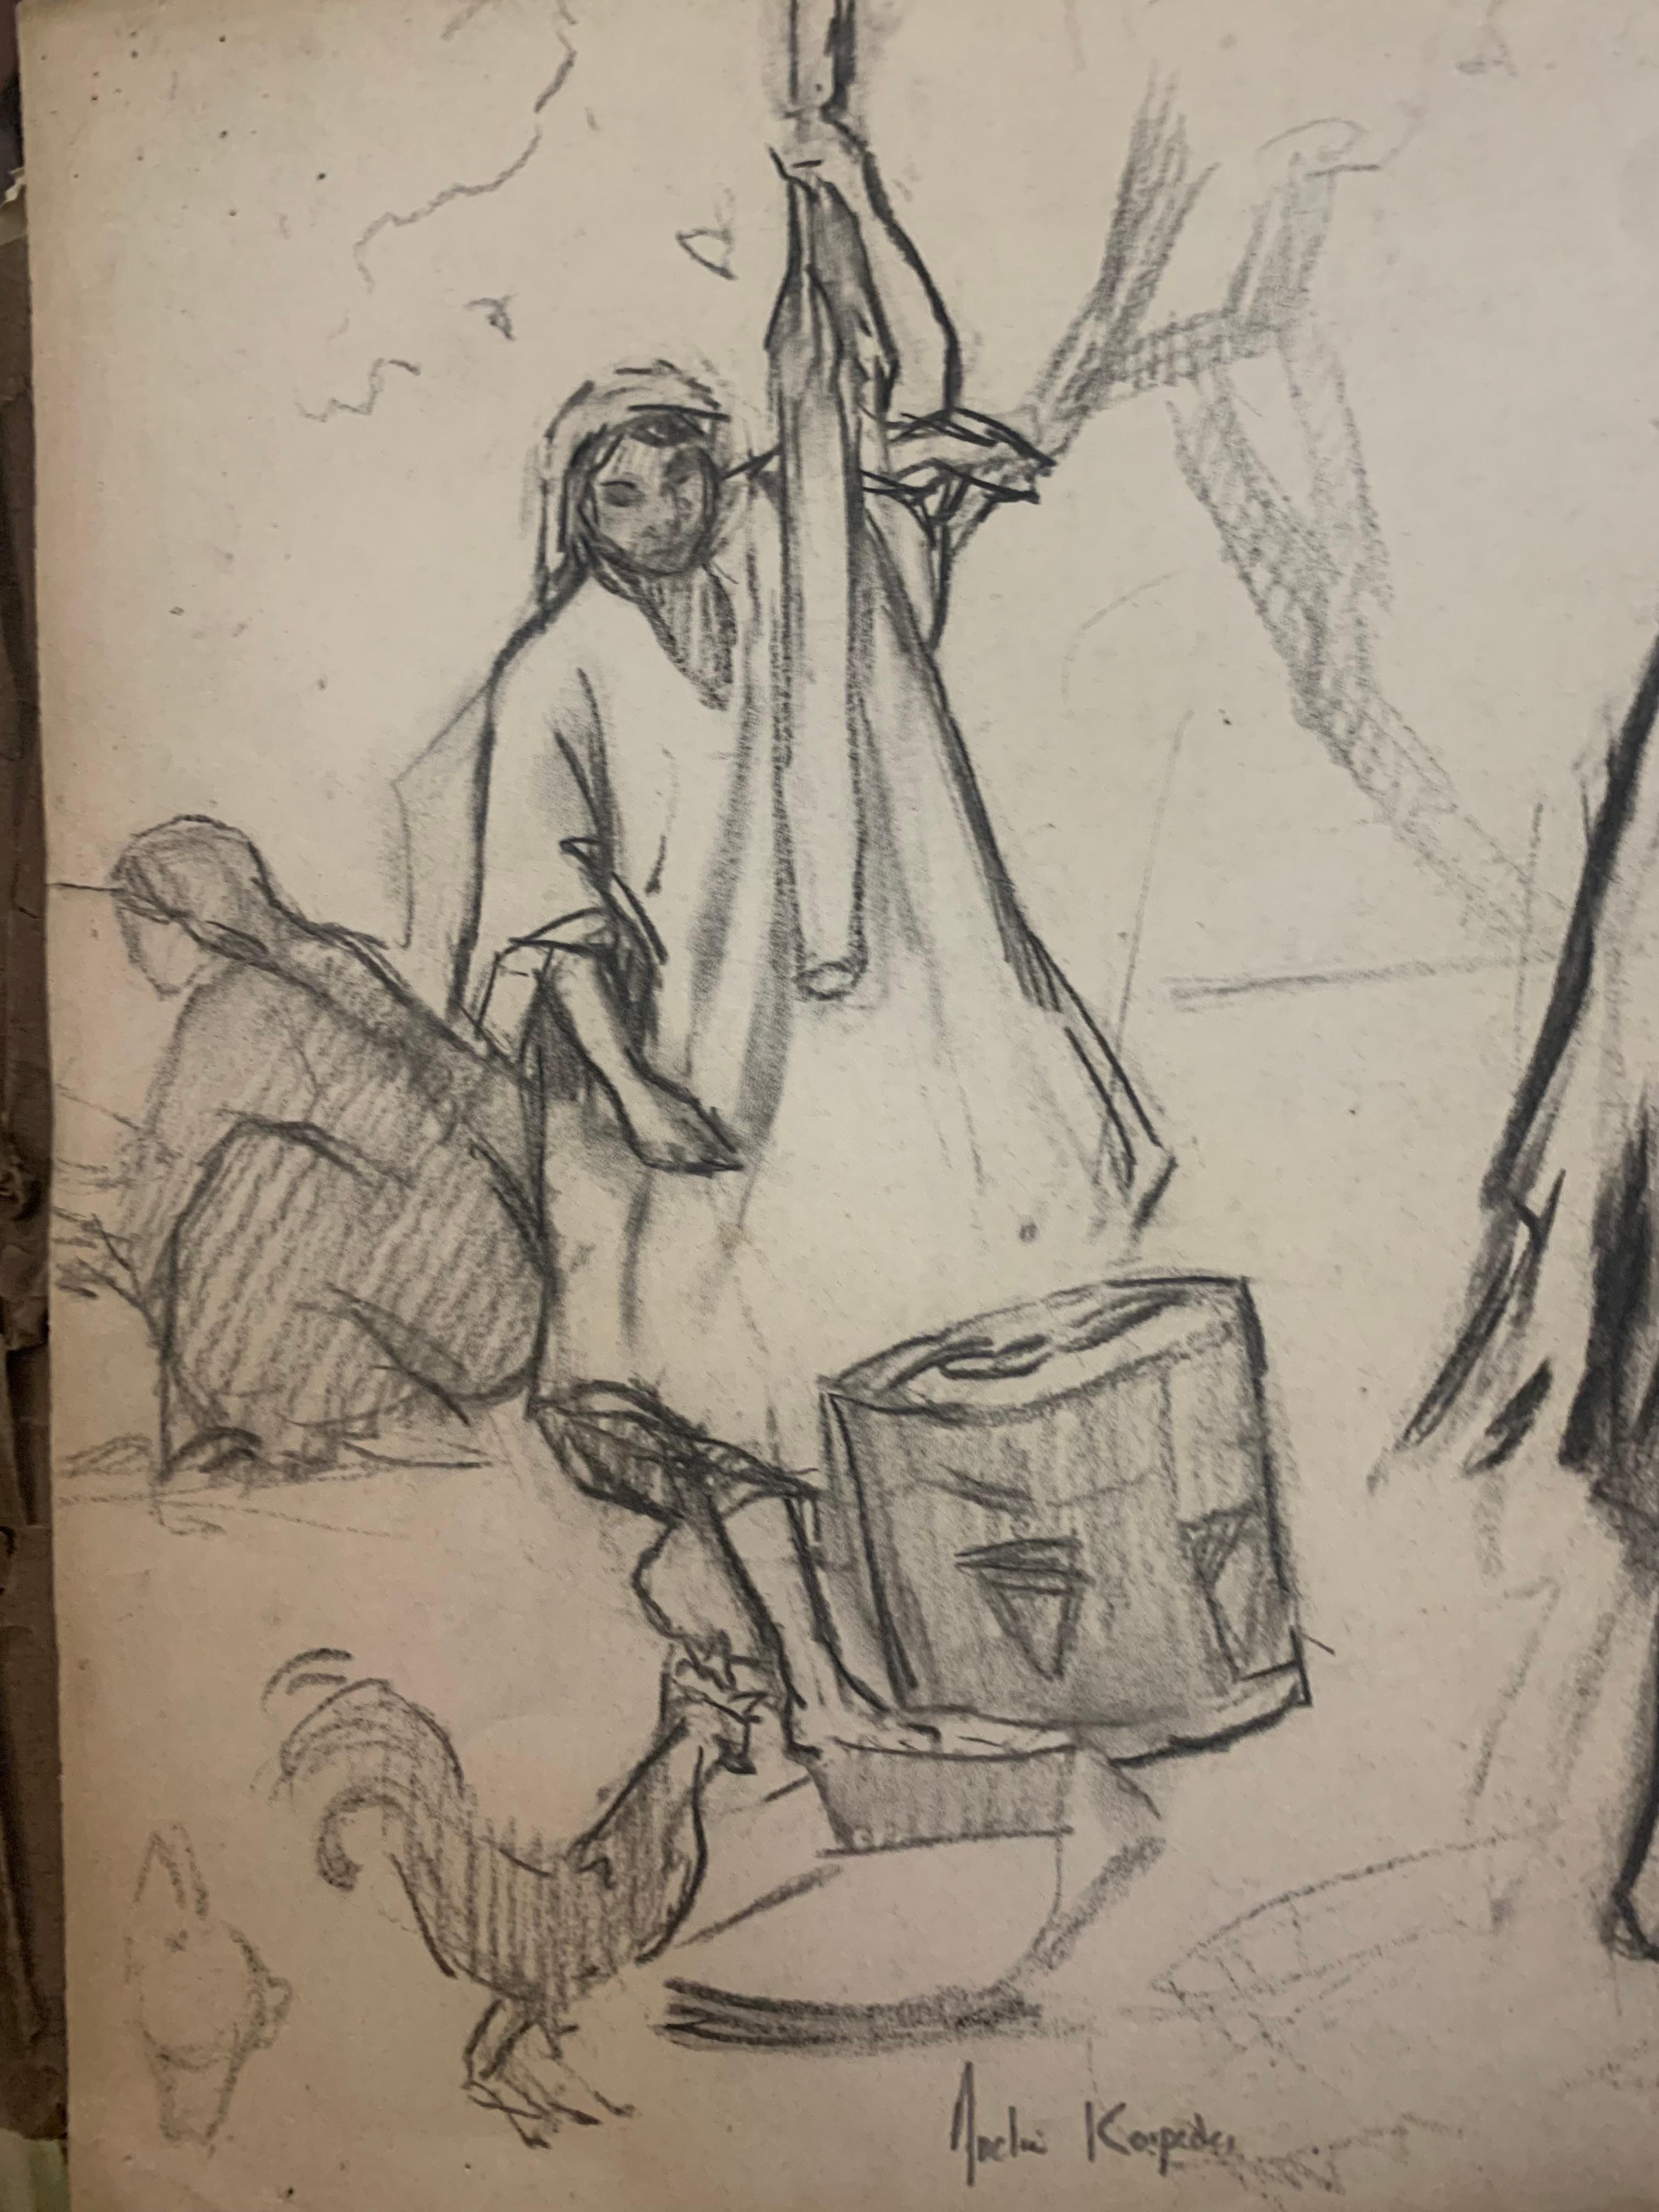 Die Frauen des östlichen Dorfes.

Andrée Karpelès (Paris, 1885 - Grasse, 1956).

Eine Kohlezeichnung auf Papier vom Anfang des 20. Jahrhunderts, die 3 Bäuerinnen in lockerer Kleidung und mit Kopftuch bei der Arbeit darstellt. Die Stilisierung der